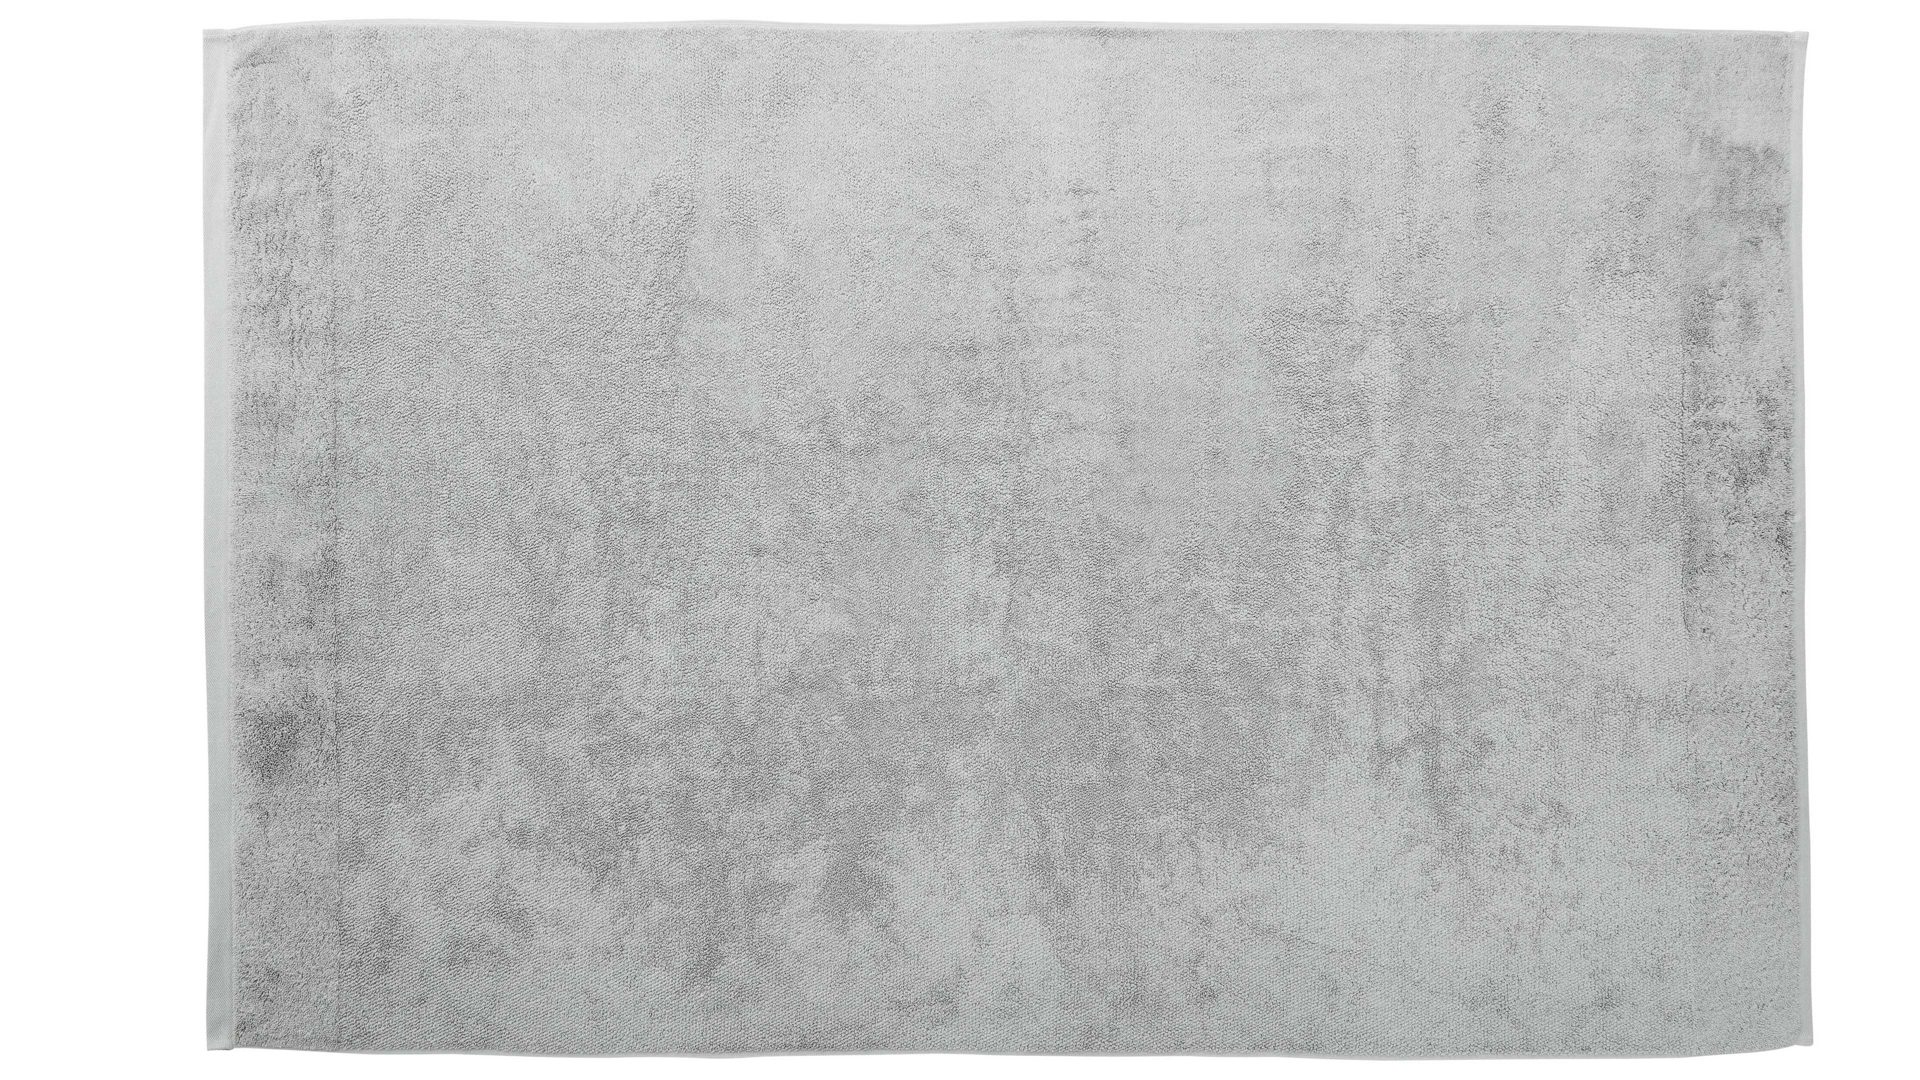 Duschhandtuch Interliving aus Naturfaser in Grau Interliving Handtuch Serie 9108 - Duschtuch Silber – ca. 100 x 150 cm